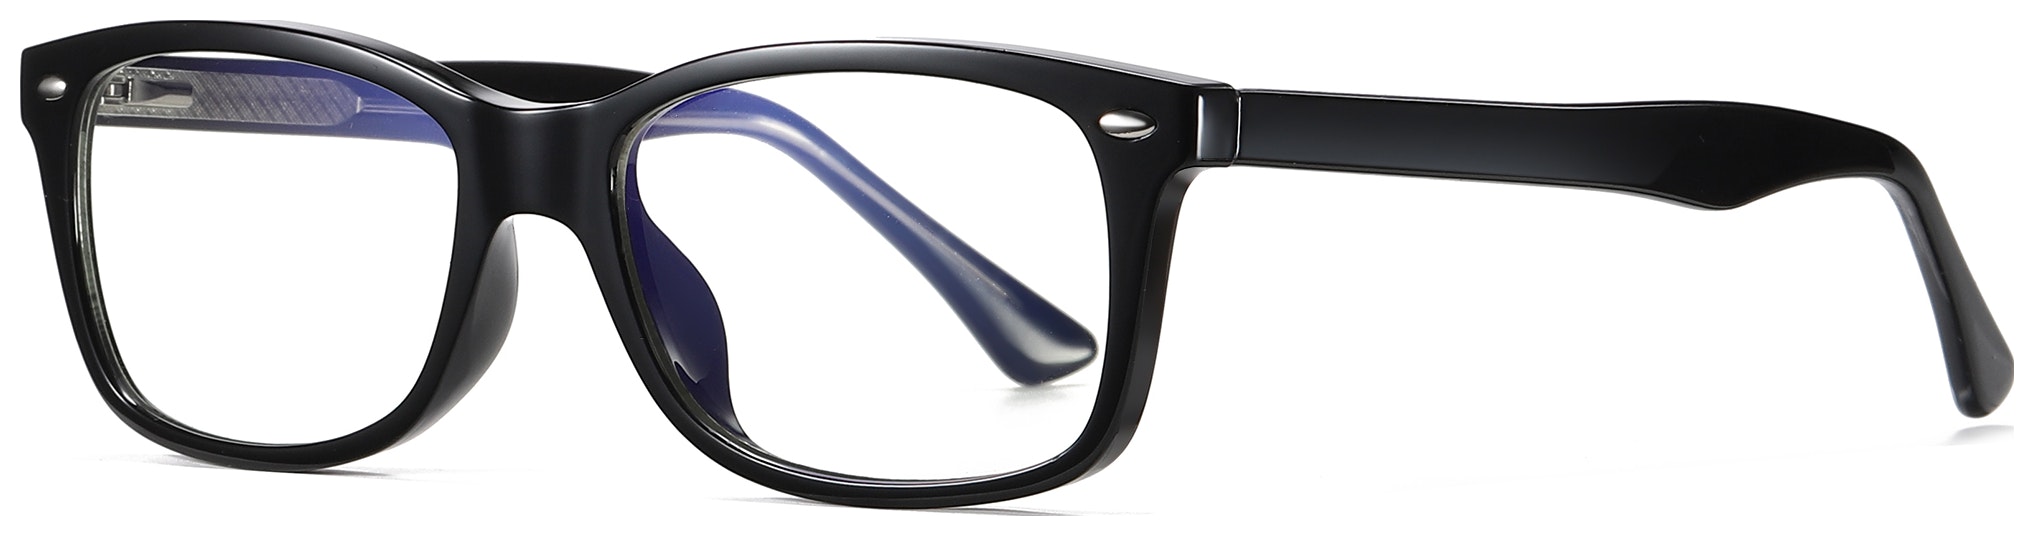 Billede af Regulær bluelight briller til kvinder, Enjoy